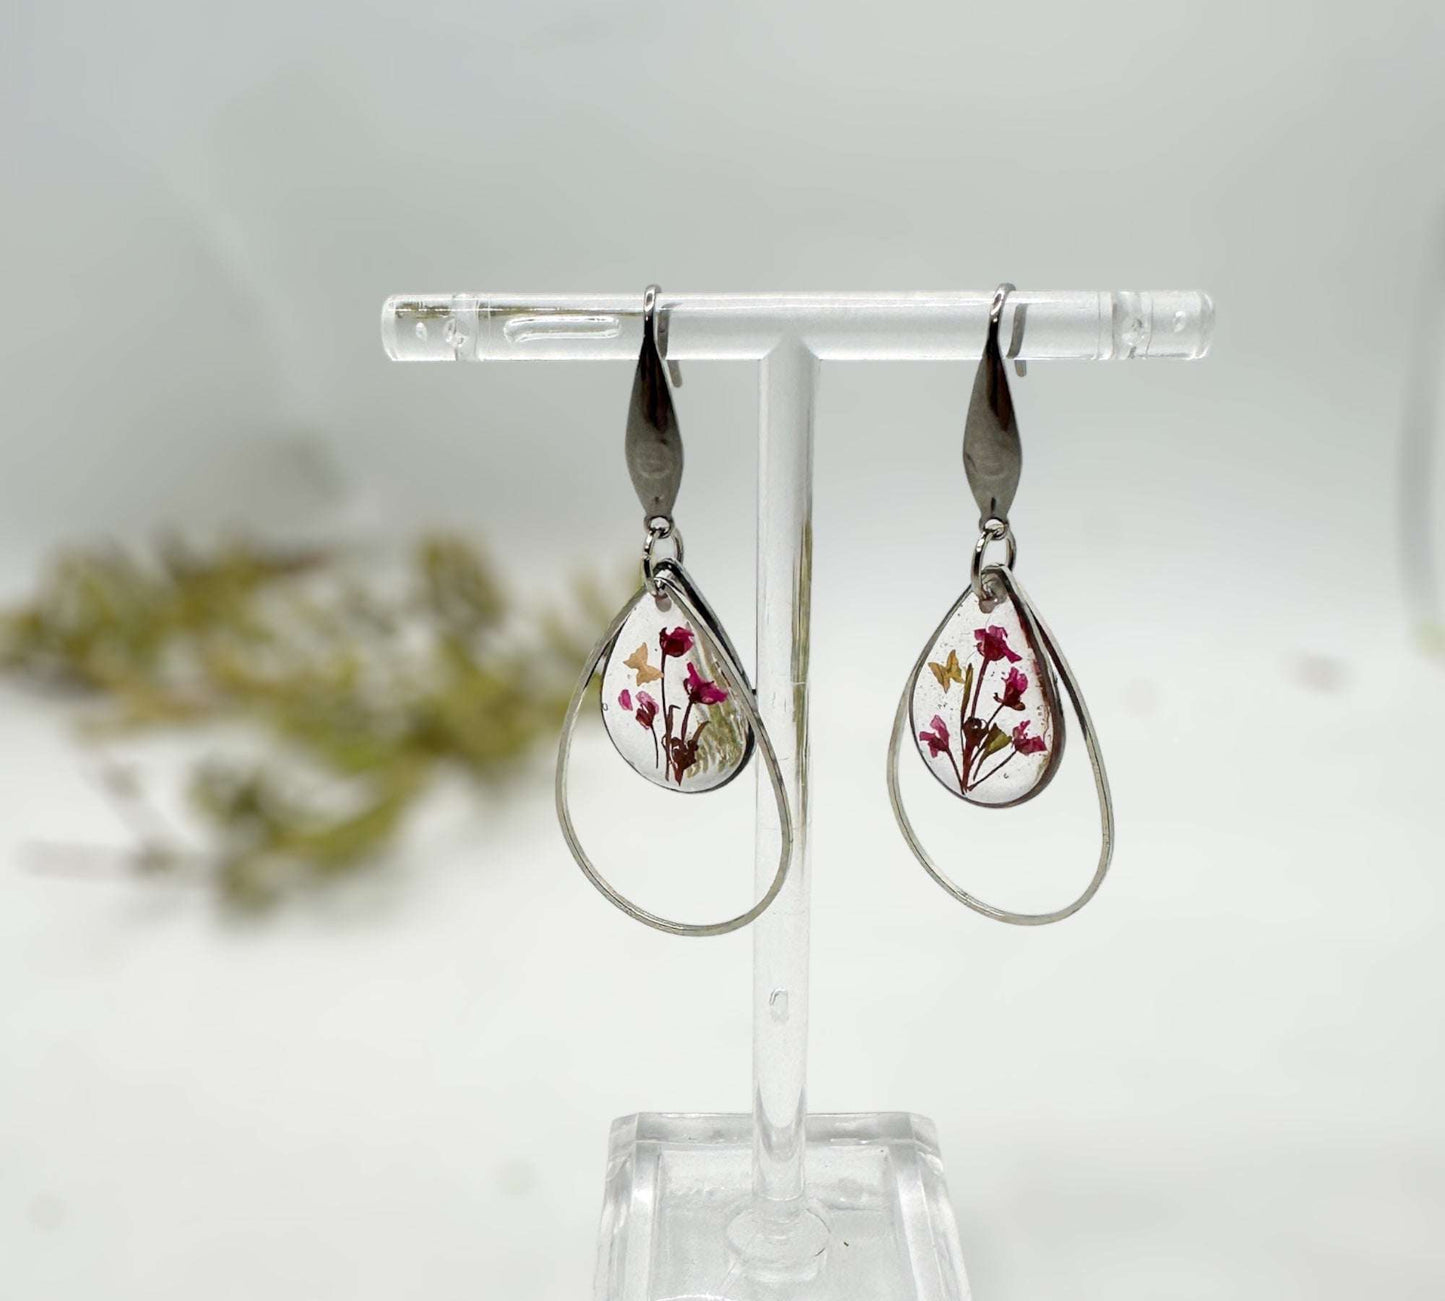 Cherry Blossom Charm - Handmade Pressed Flower Resin Earrings